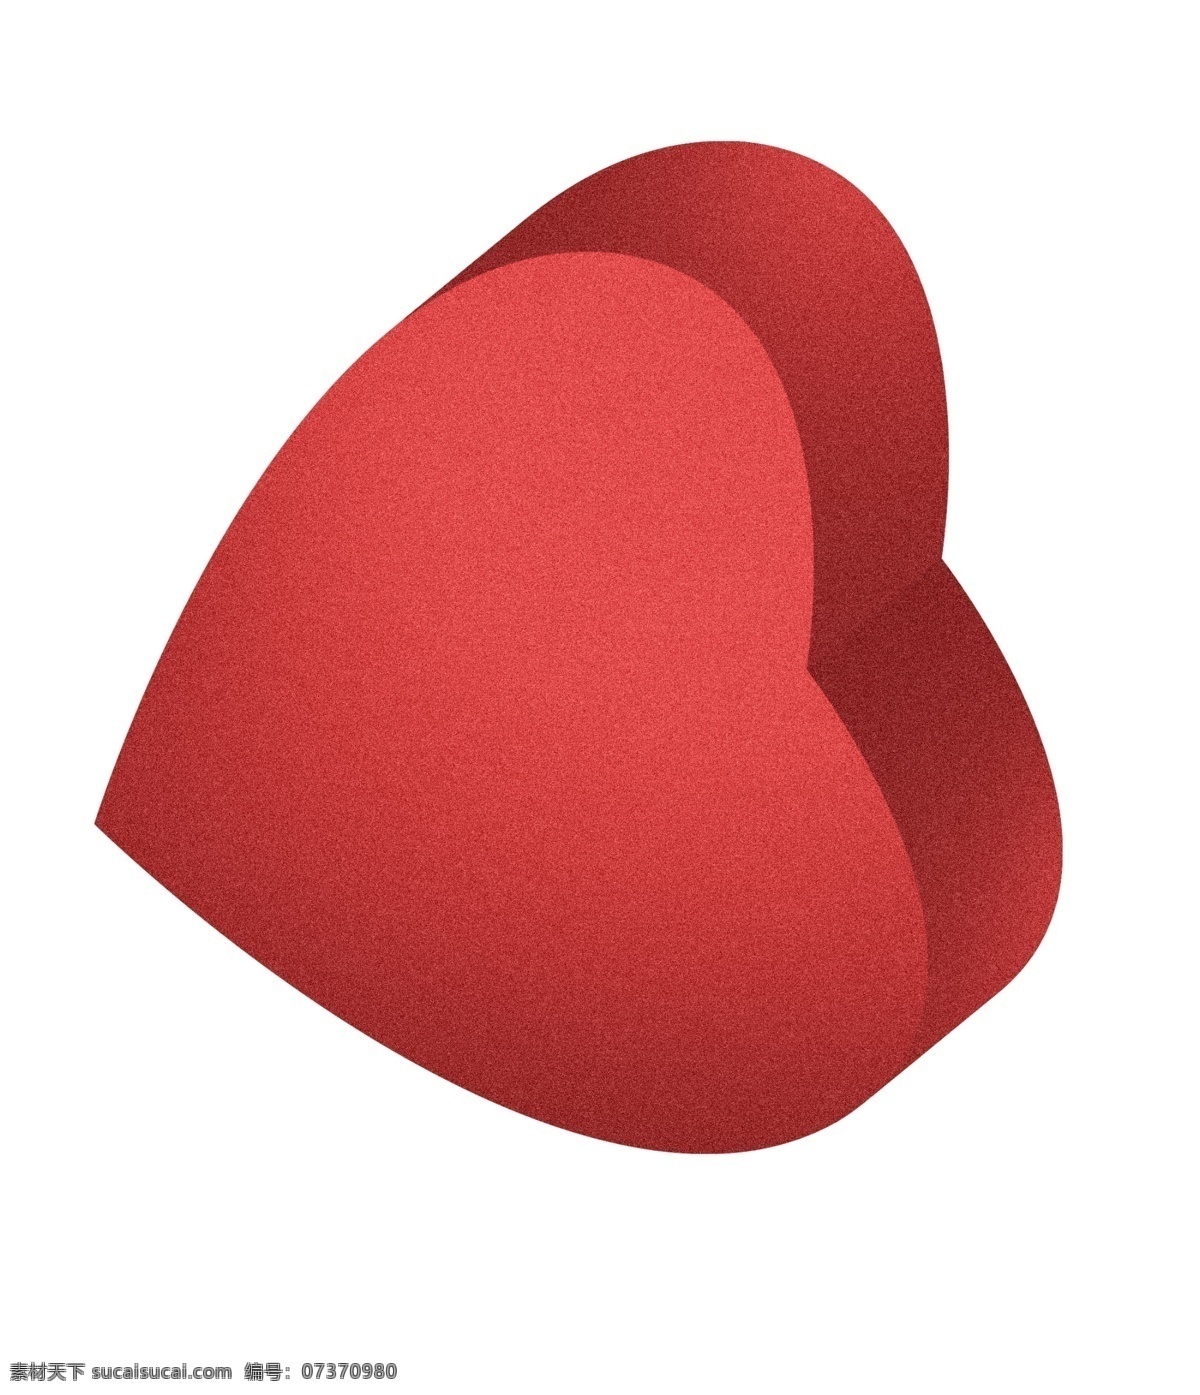 情人节 爱心 心形 告白 大红色 立体 浪漫 精致 颗粒 免 扣 礼盒 噪点 机理 免扣